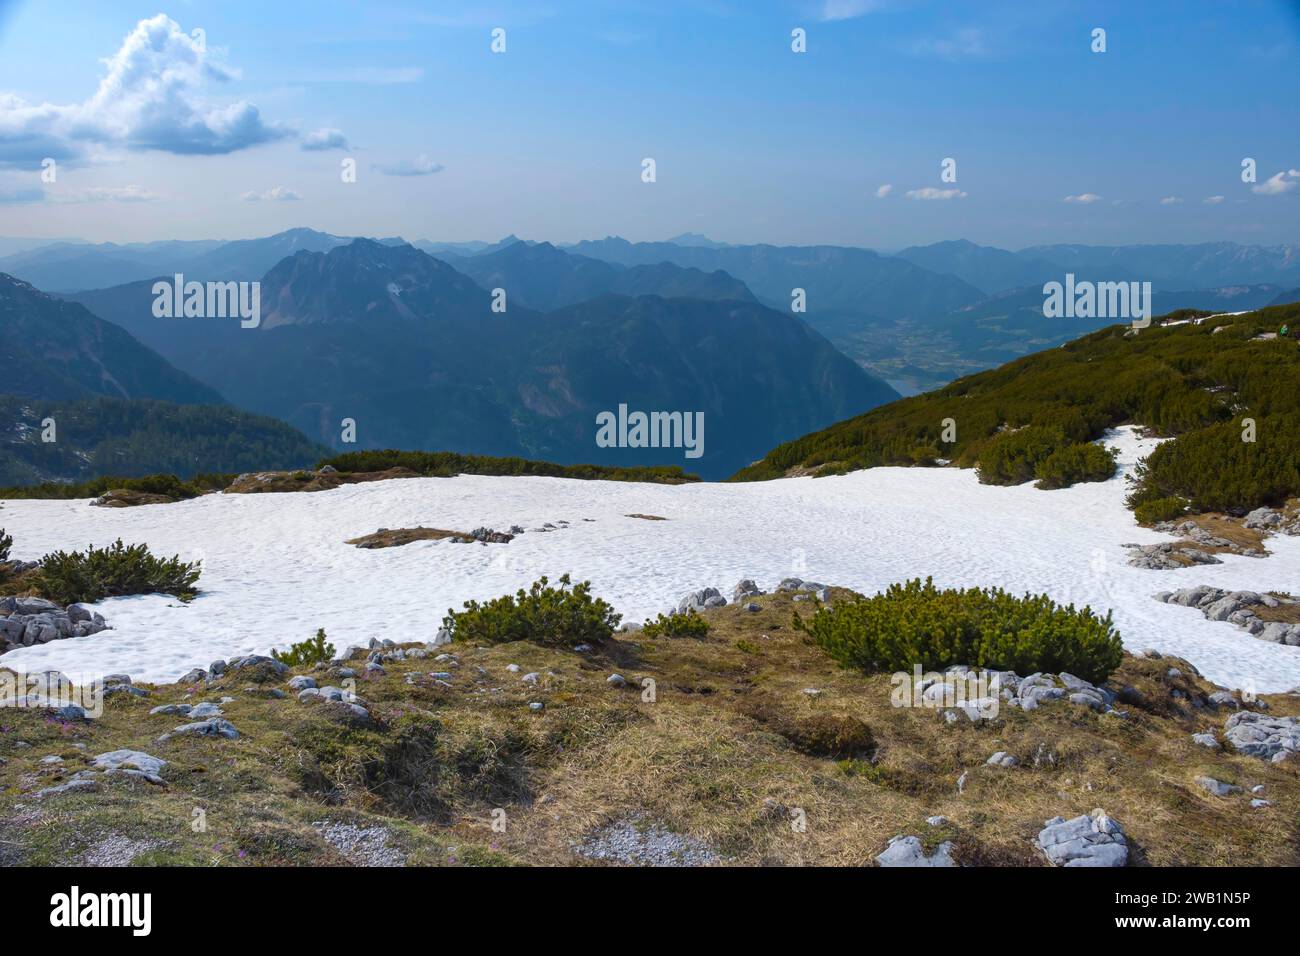 Incredibile panorama delle montagne da una piattaforma di osservazione a 5 dita a forma di mano con cinque dita sul monte Krippenstein nelle montagne Dachstein Foto Stock